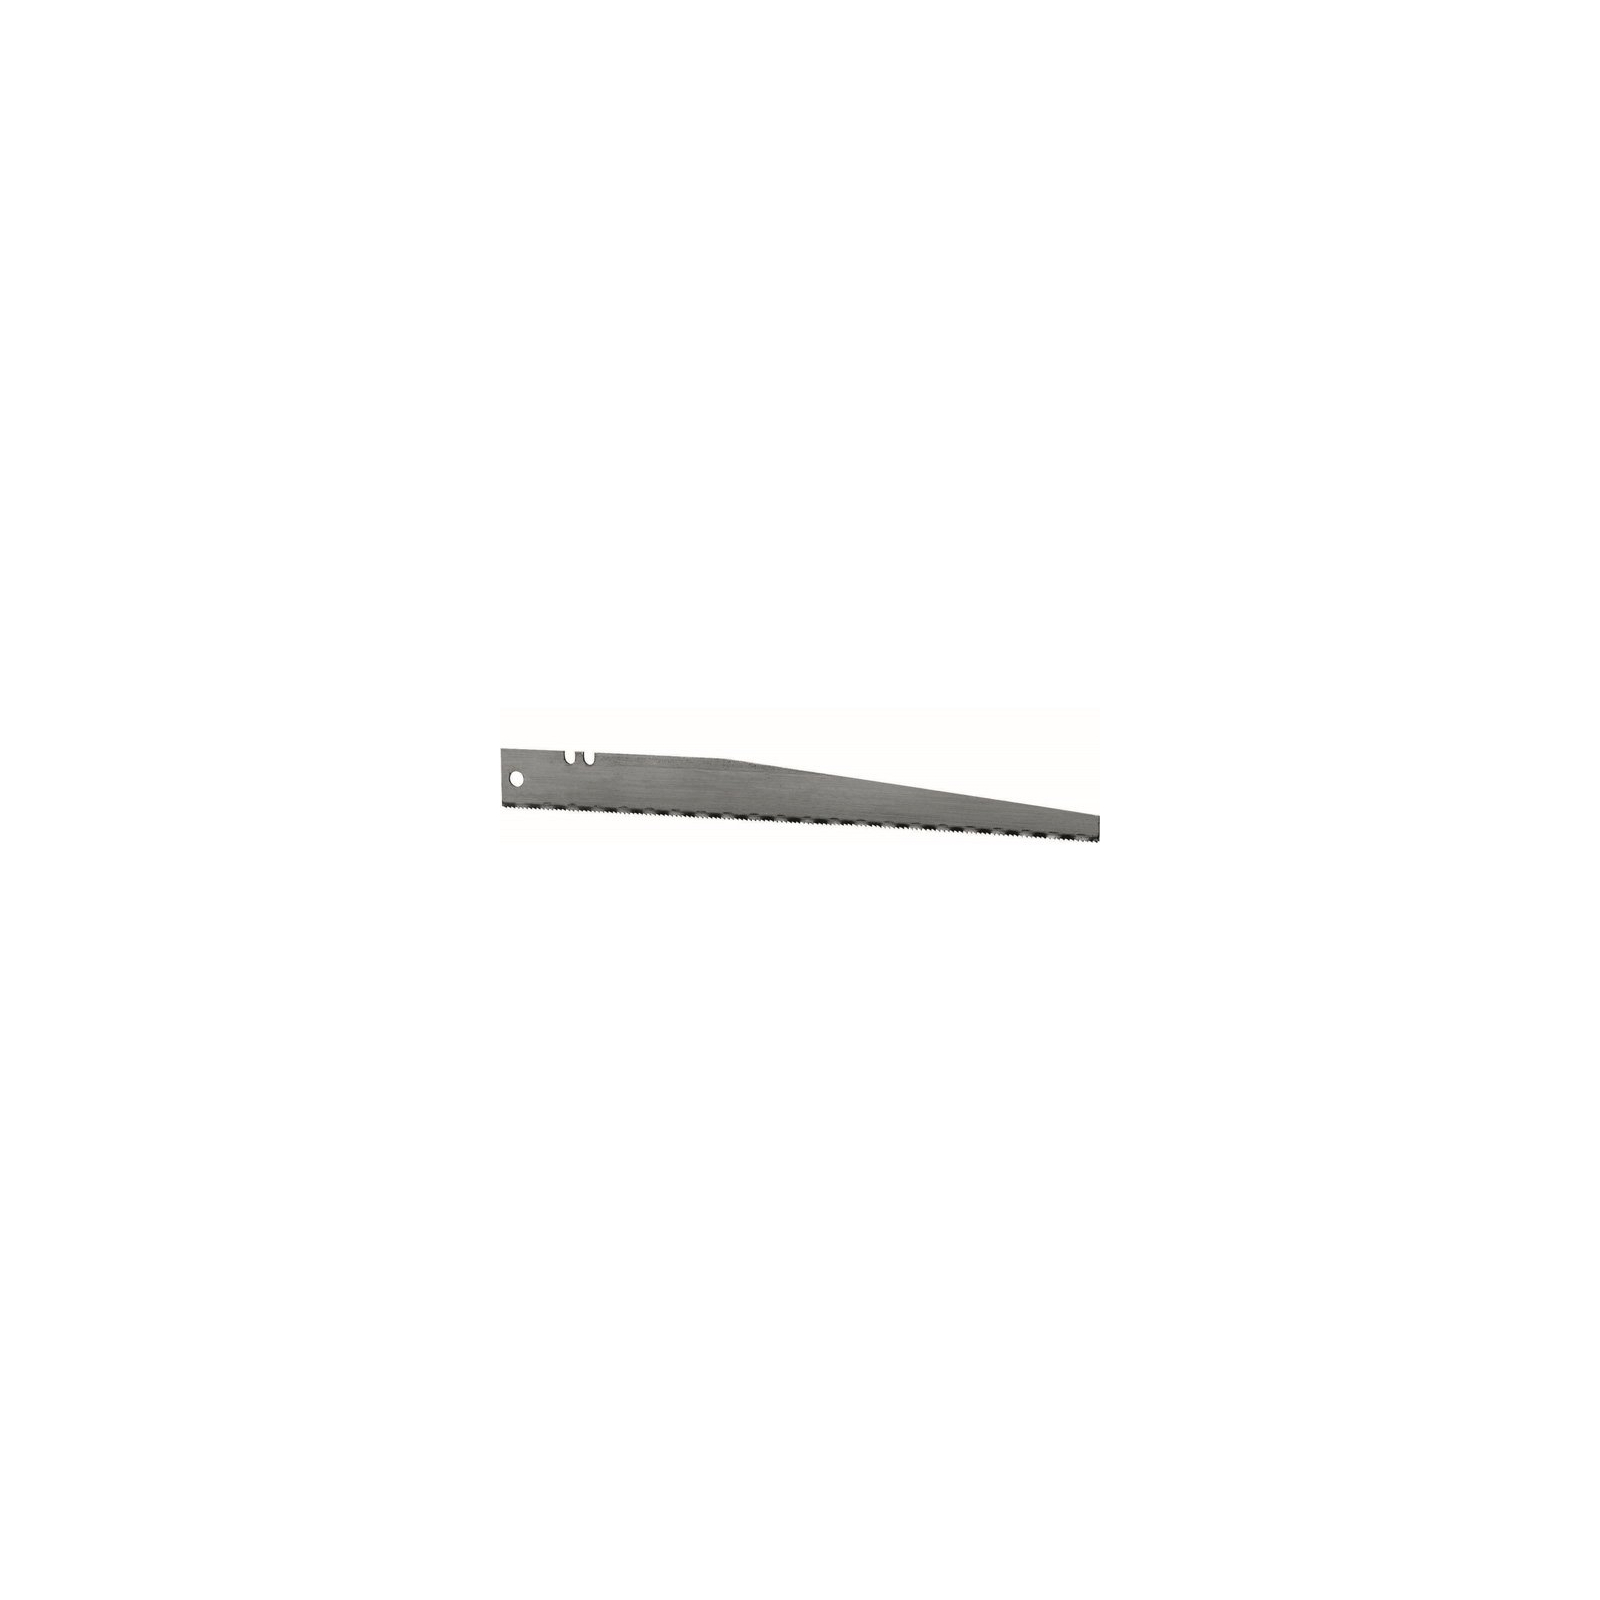 Полотно Stanley HМ ножов. по металлу для исп. с ножами, L=190мм. (0-15-277) изображение 2